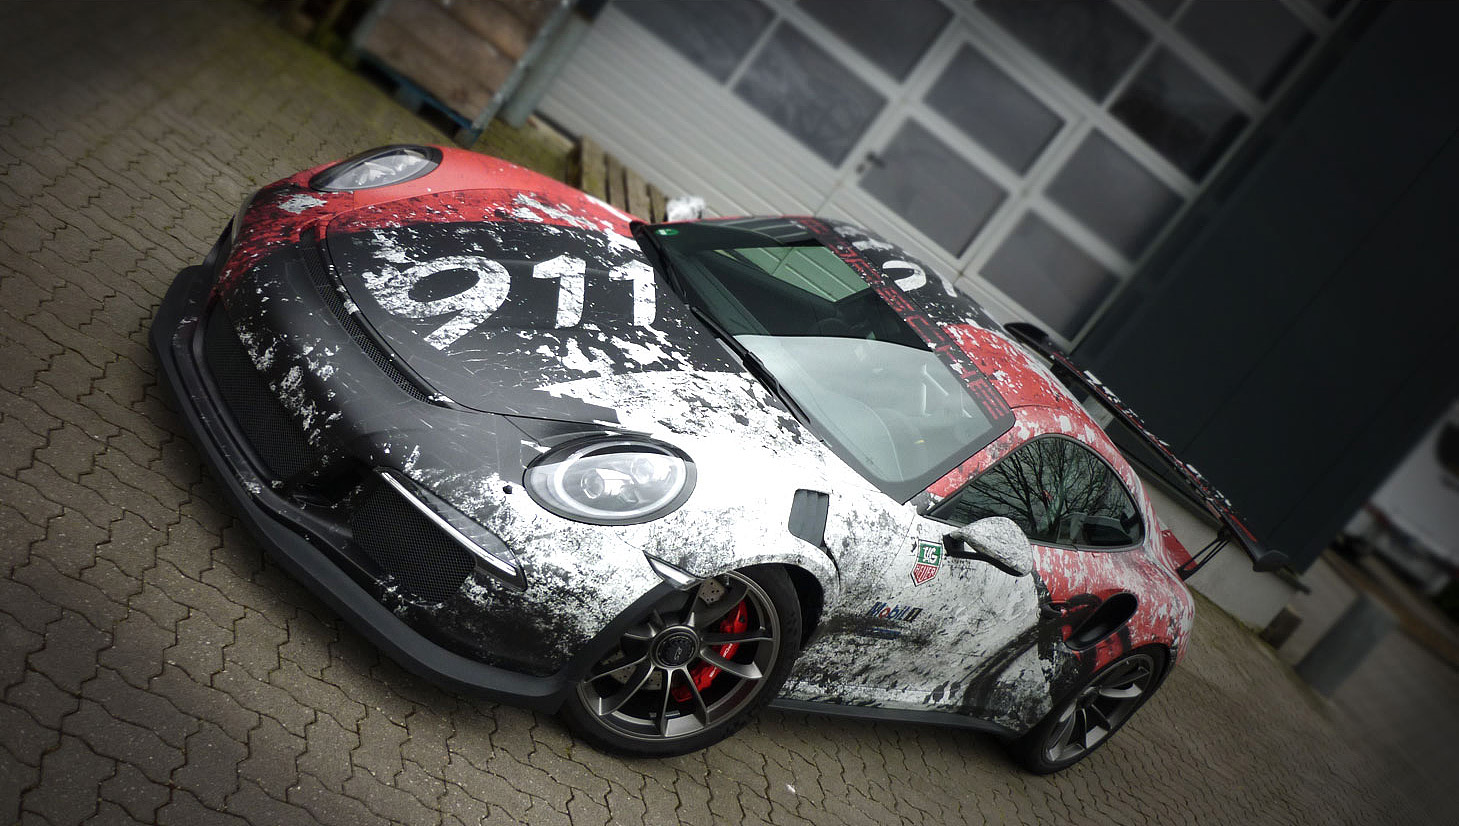 💥 Cracked Porsche 911 GT3 💥